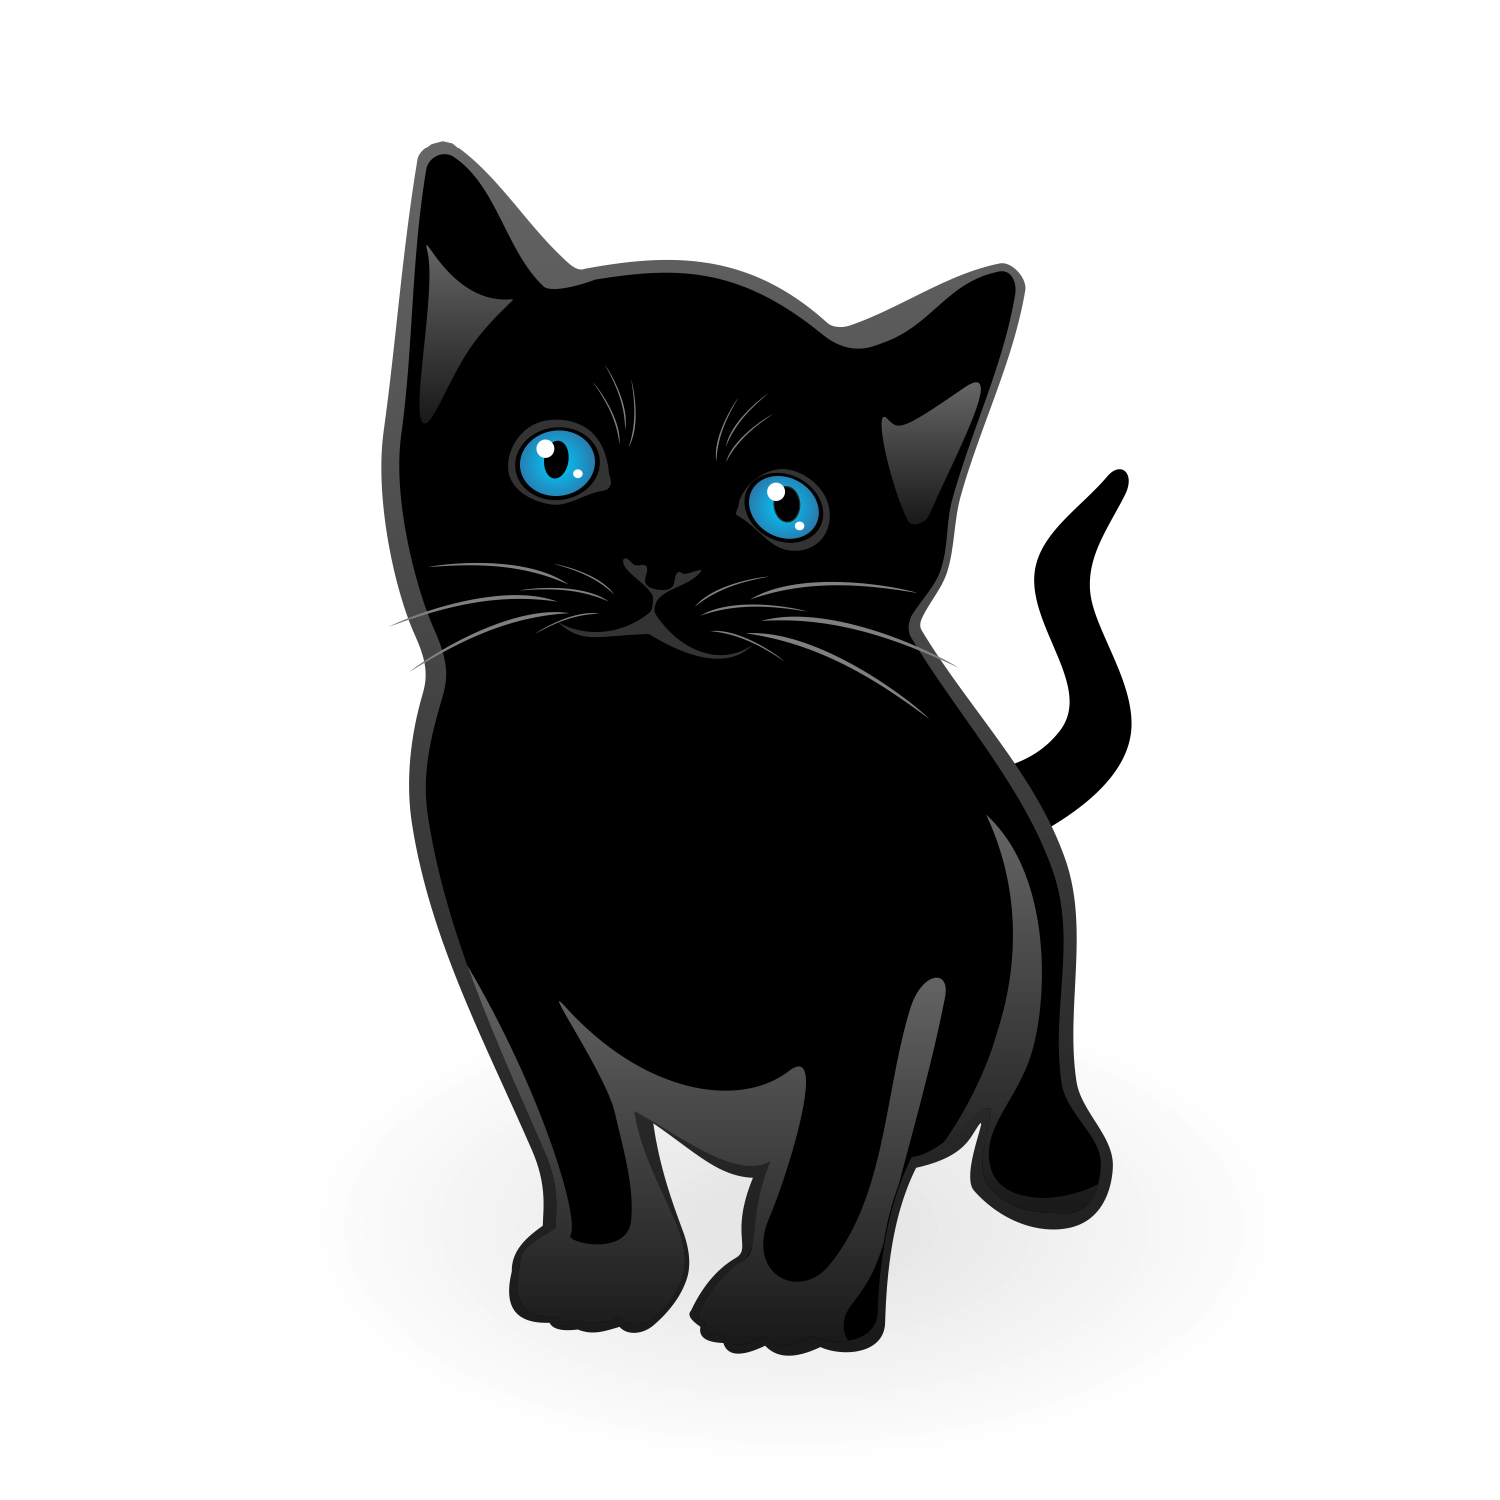 Черный кот распечатать. Черный кот мультяшный. Черная кошка на прозрачном фоне. Черный котик на прозрачном фоне. Черная кошка на белом фоне.